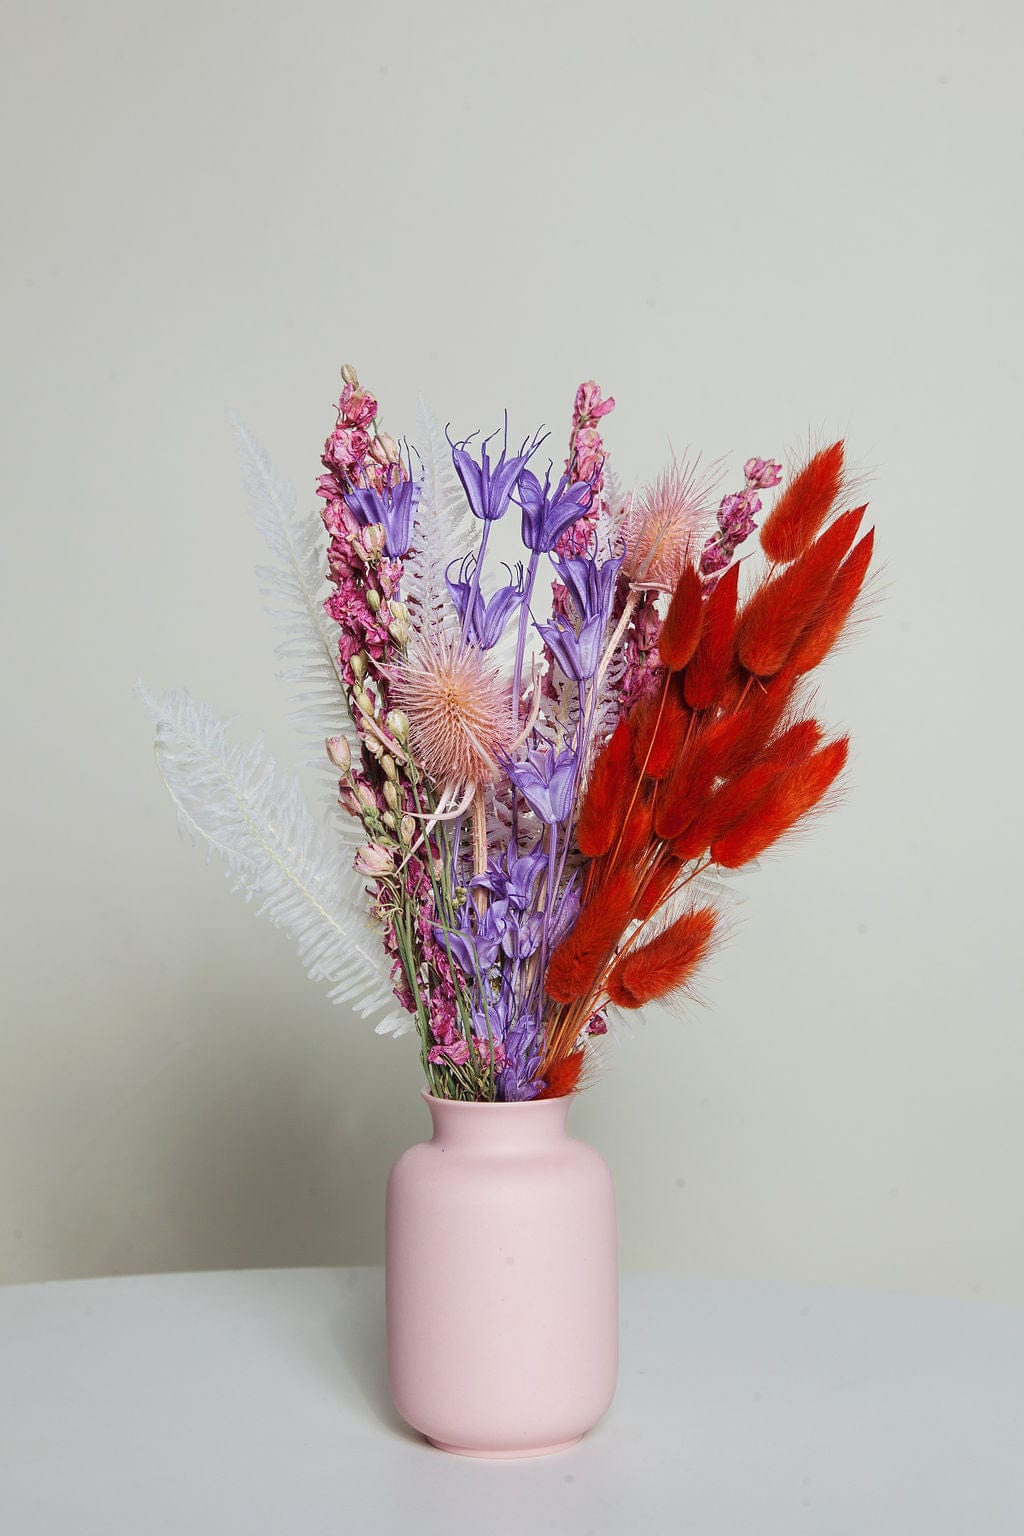 Idlewild Floral Co. Bouquets Confetti Petite Bouquet with Vase